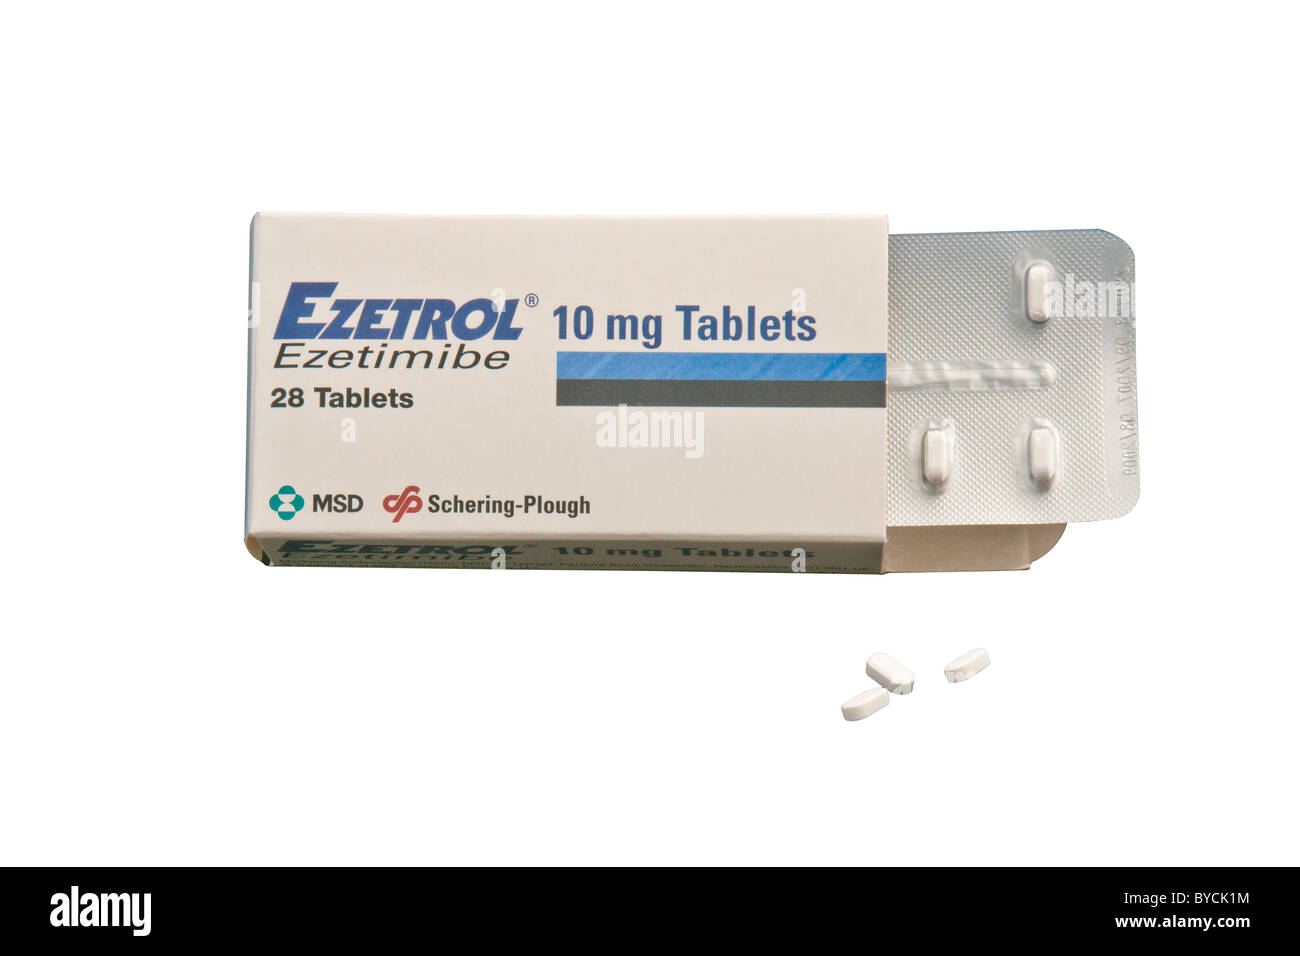 Ezetrol compresse, un tipo di farmaco conosciuto come un inibitore di assorbimento di colesterolo. Dato ai pazienti con livelli di colesterolo elevati. Foto Stock